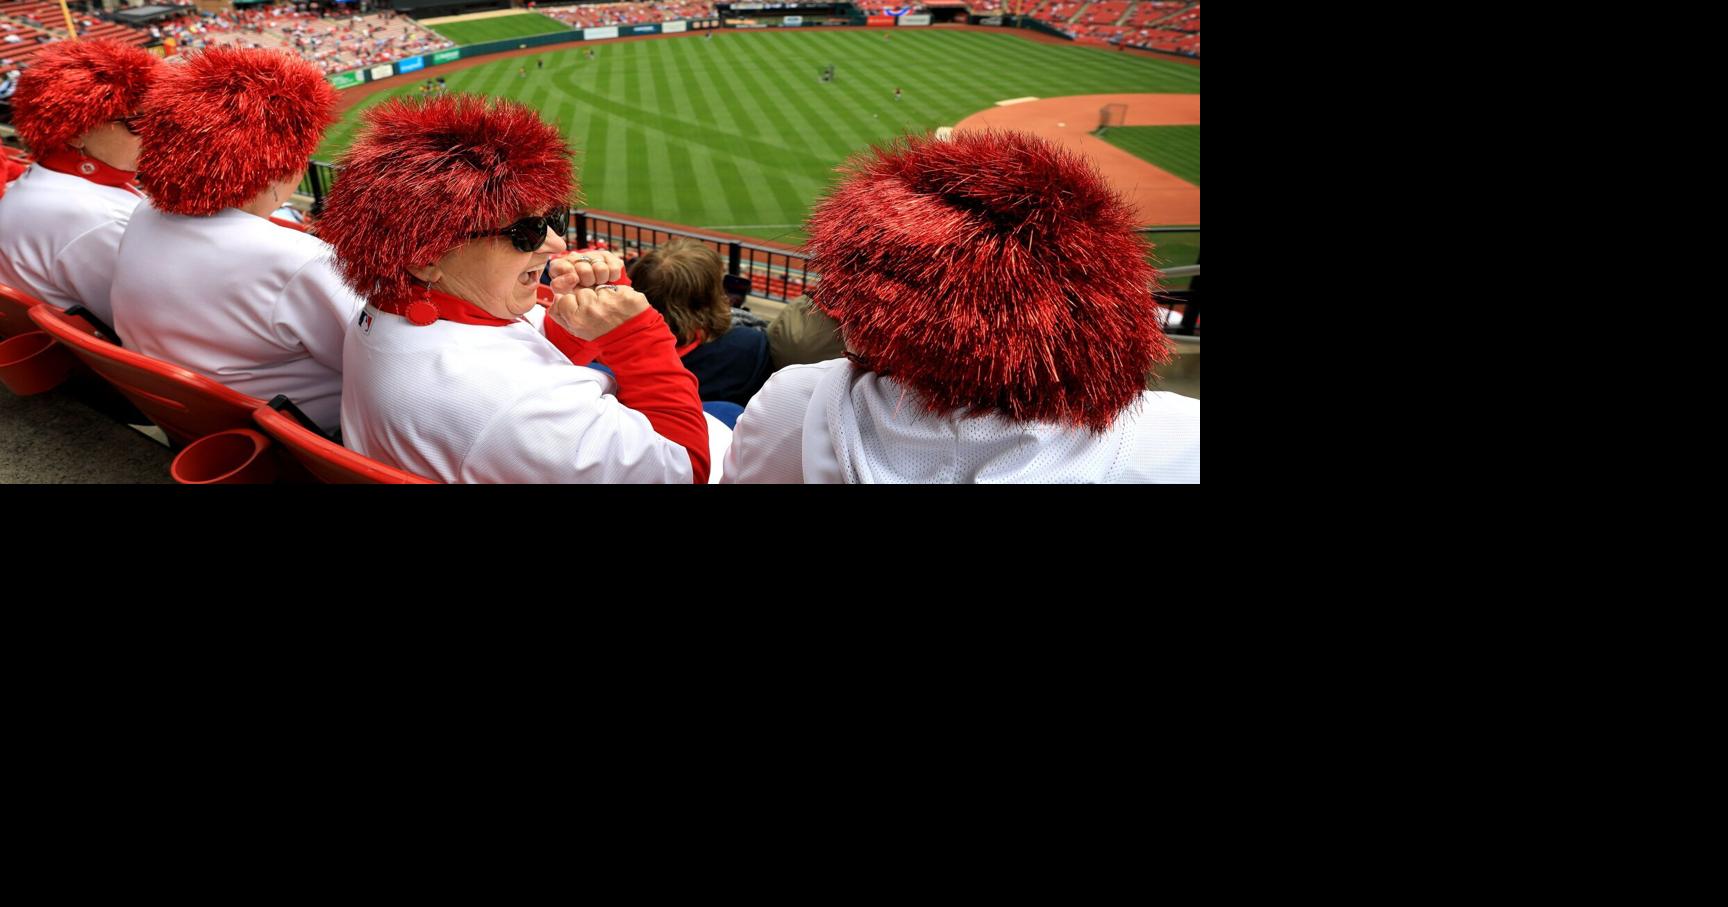 Hollidays  St louis cardinals baseball, Stl cardinals baseball, St louis  baseball